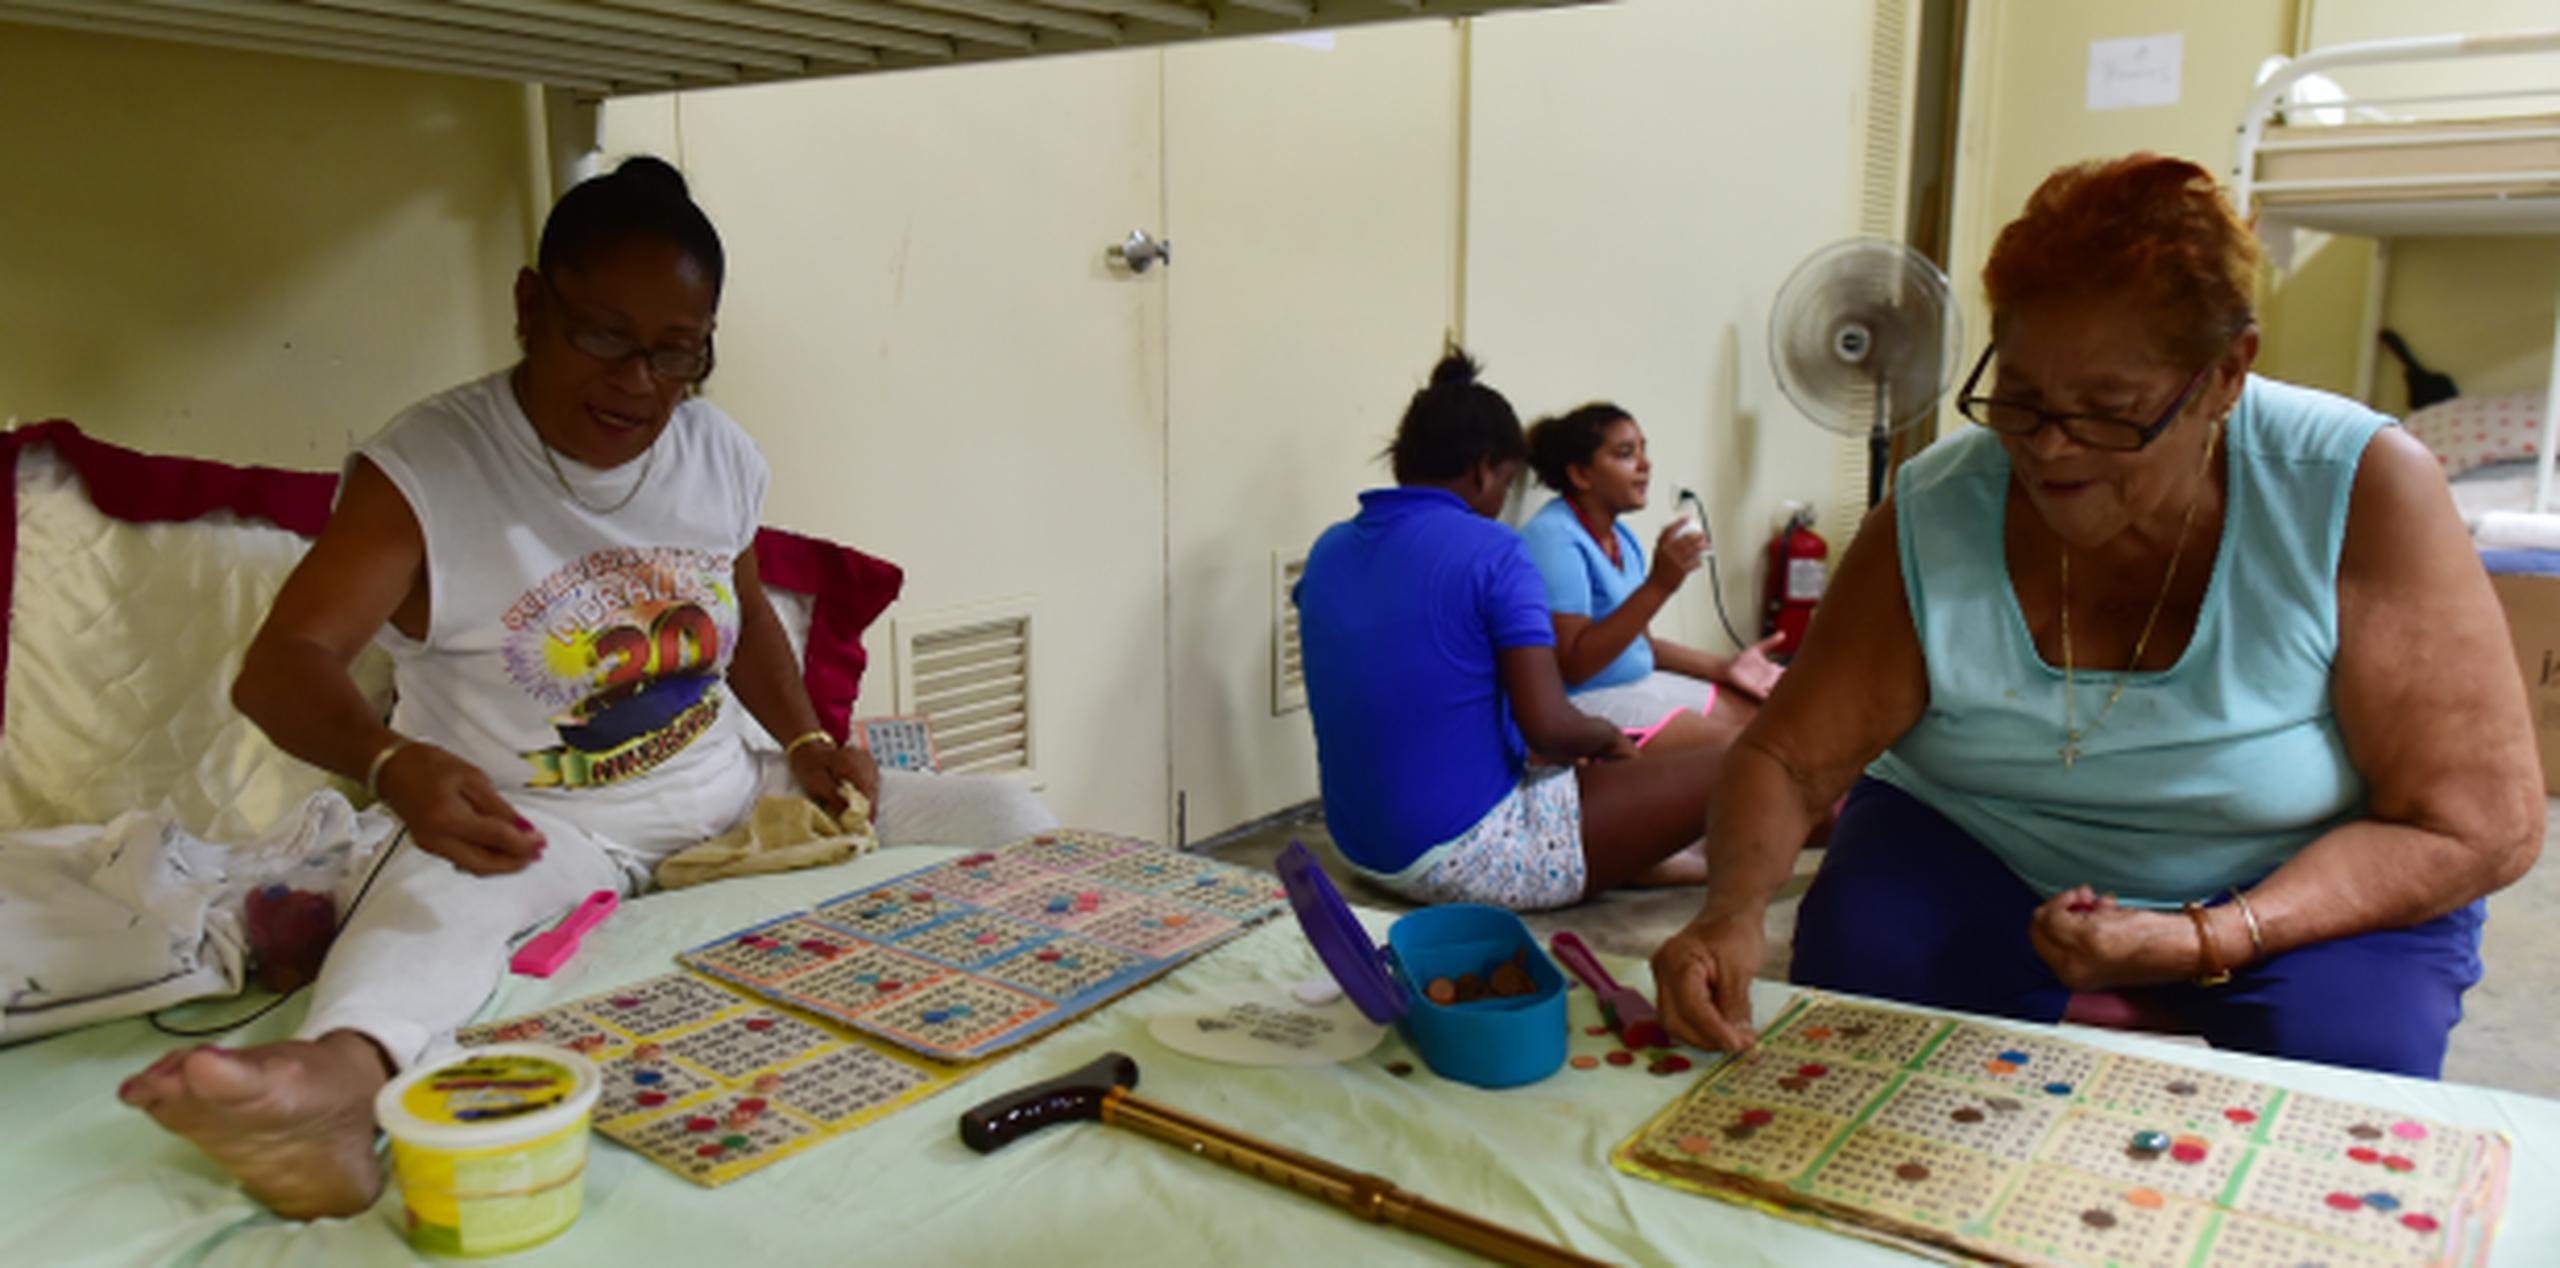 Felícita Maldonado y Diana Félix juegan bingo en un refugio en Vieques. (LUIS.ALCALADELOLMO@GFRMEDIA.COM)